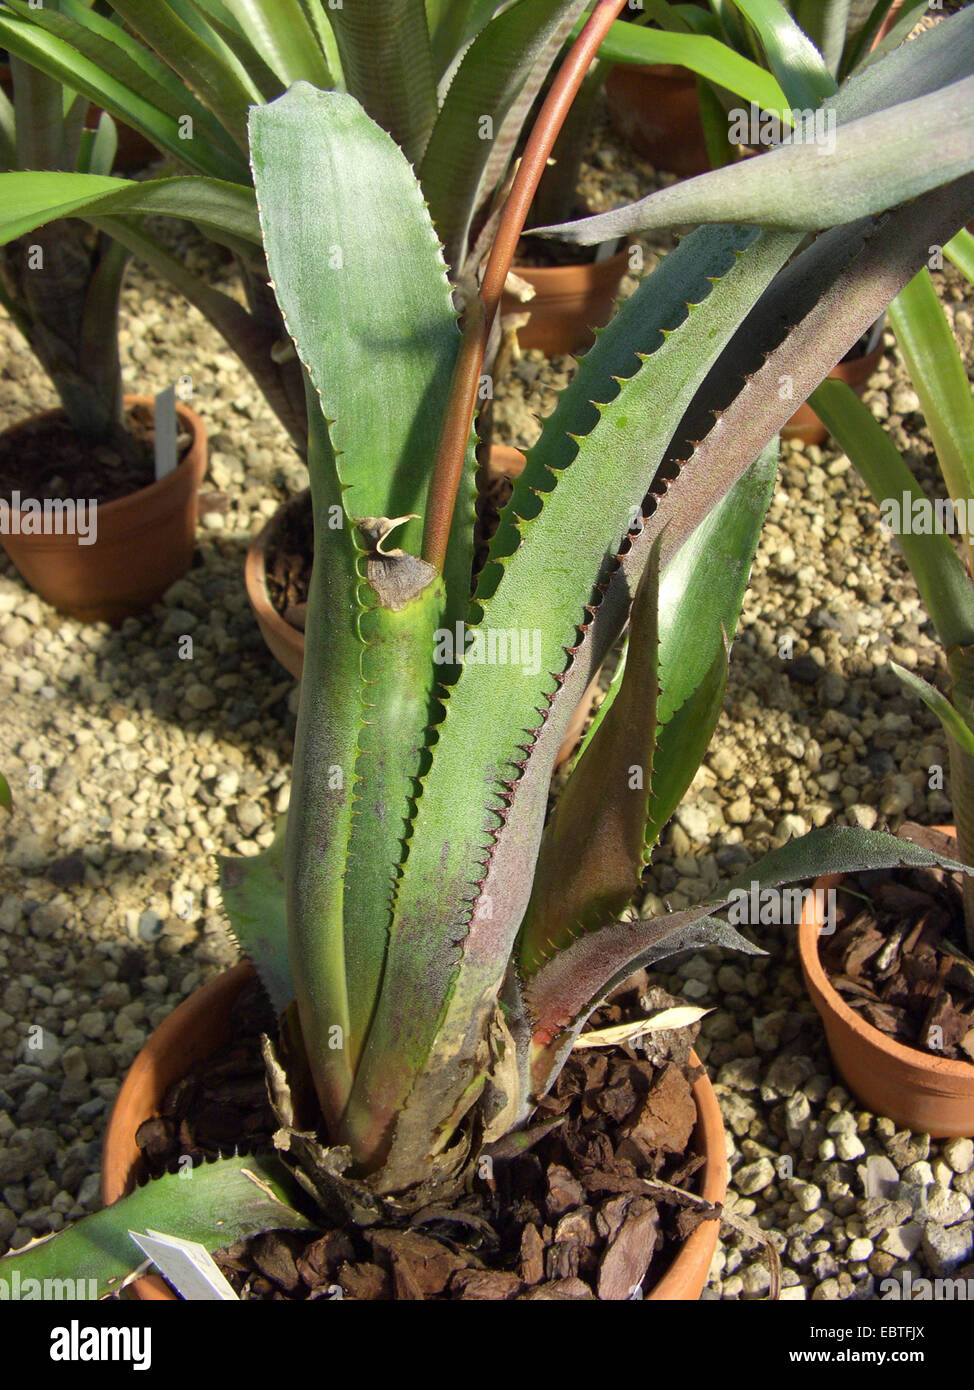 Aechmea (Aechmea dactylina), leaf rosette Stock Photo